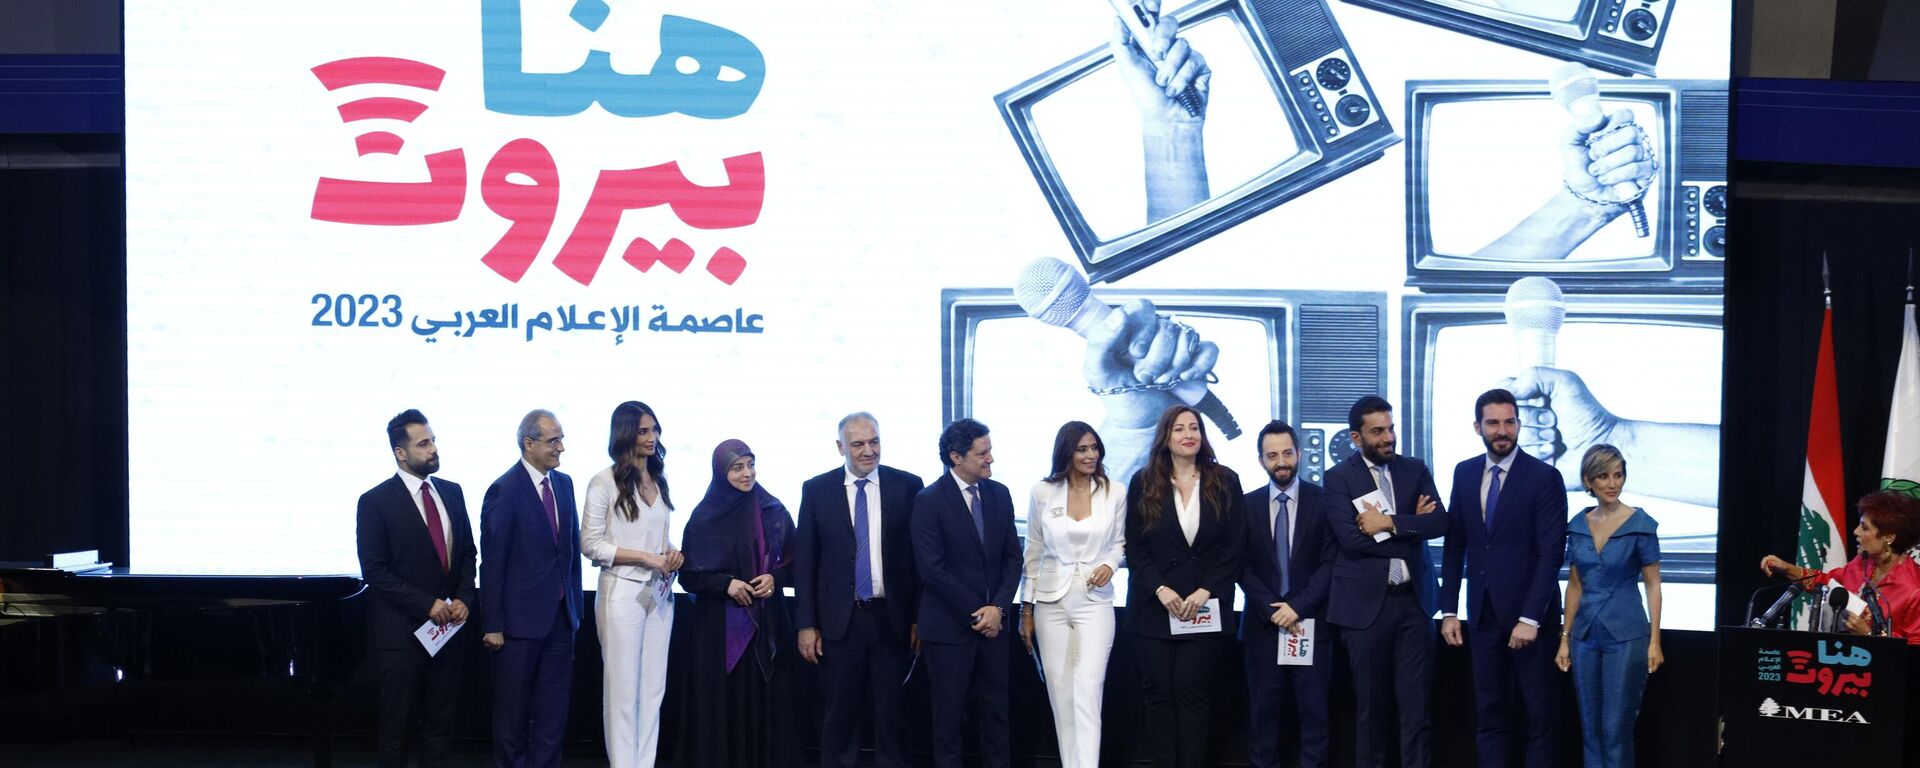 هنا بيروت، إنطلاق فعاليات بيروت عاصمة للإعلام العربي 2023 - سبوتنيك عربي, 1920, 24.05.2023